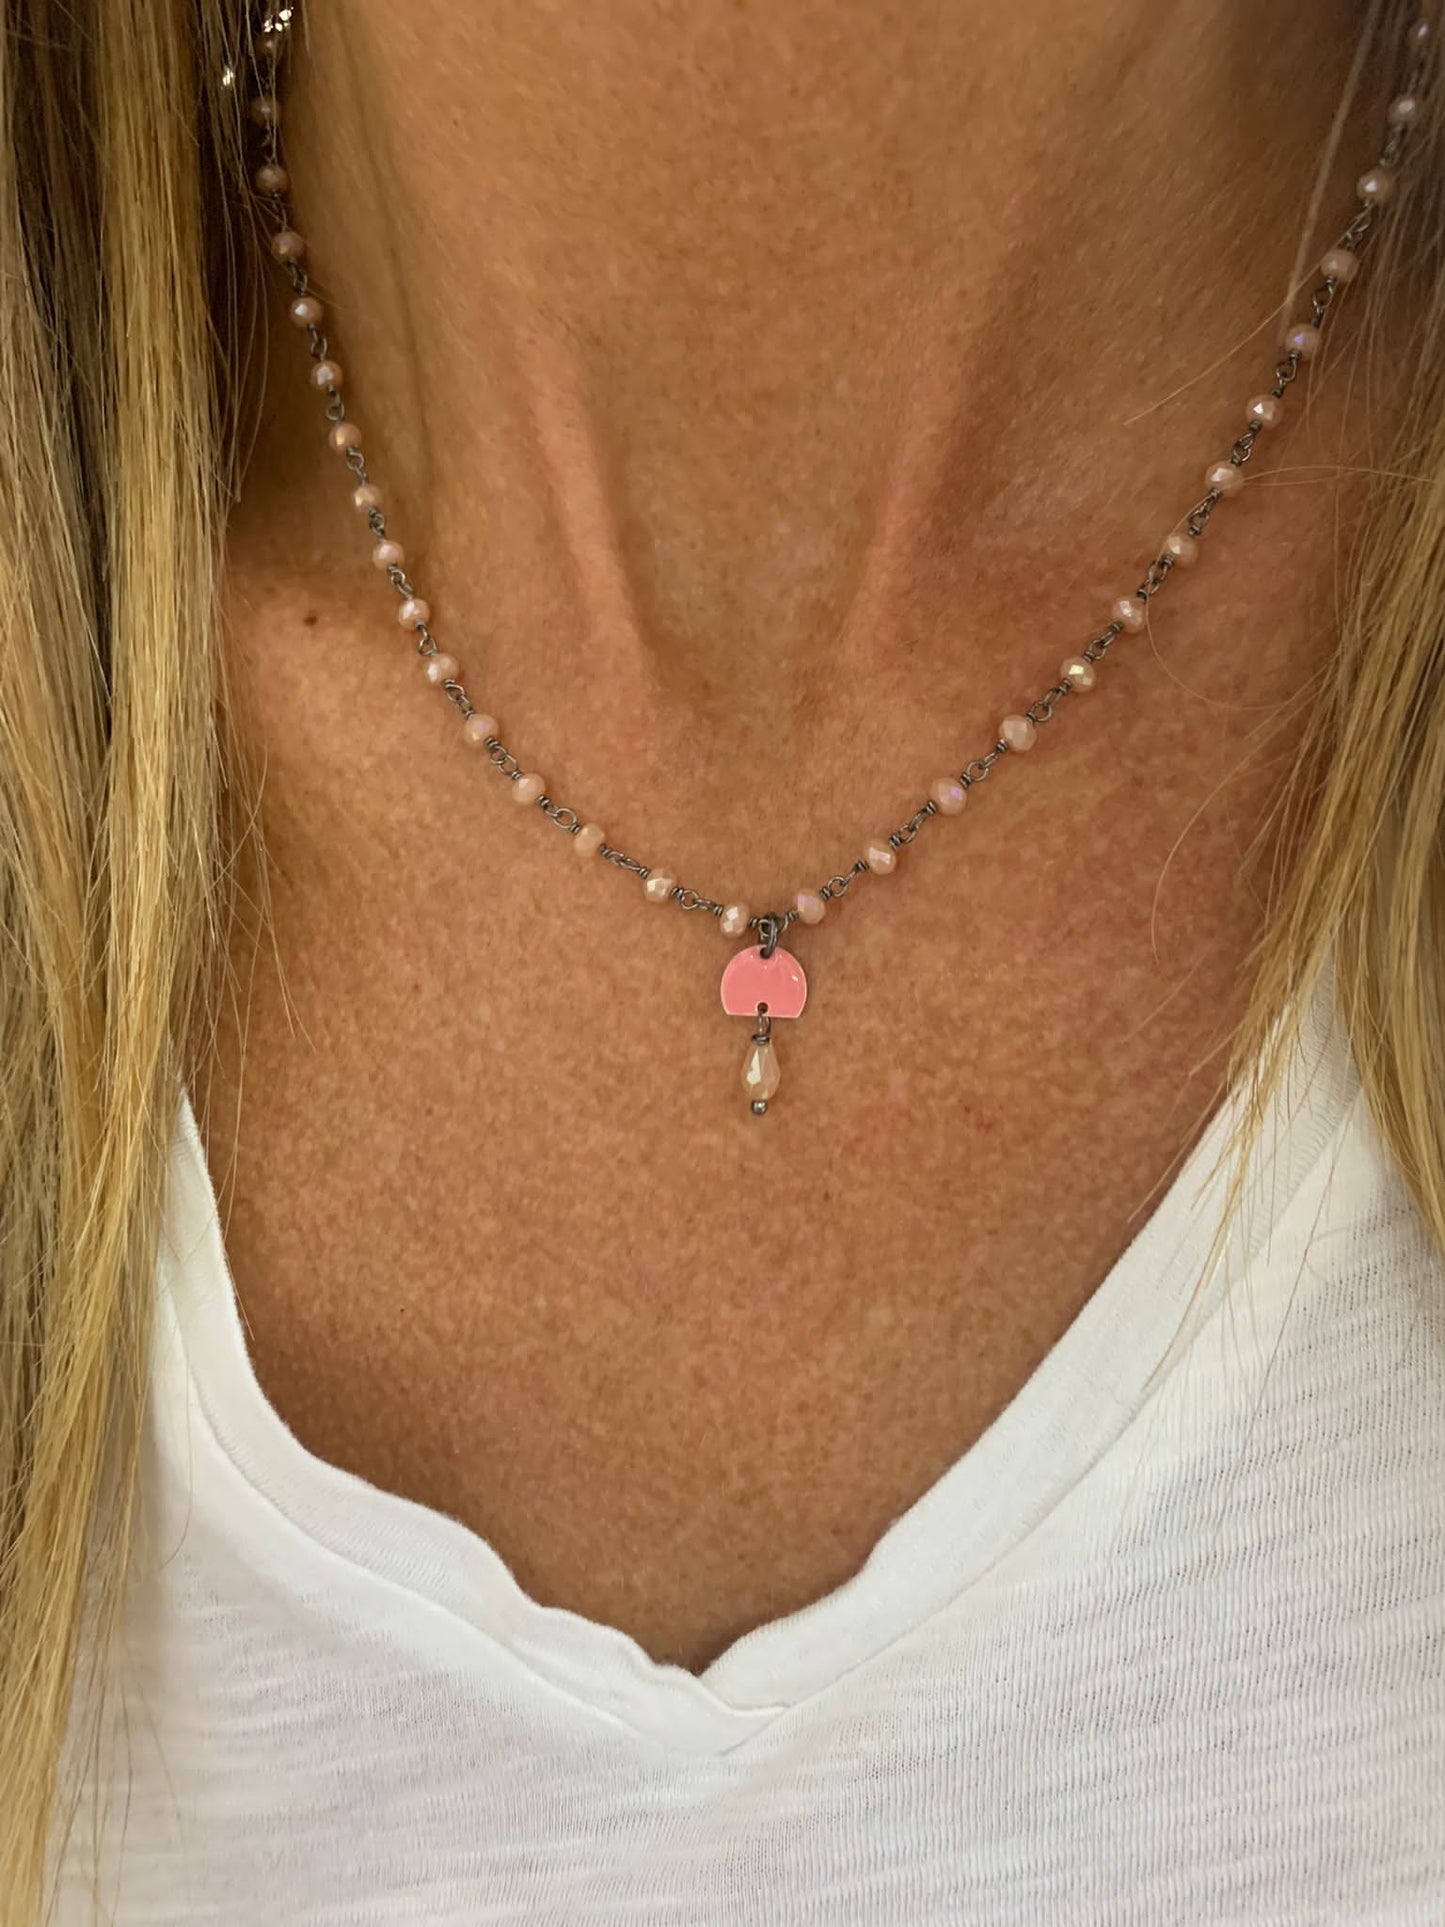 Collana crystalli rosa antico base rutenio nera con campanella pendente smalto rosa antico con una goccia pendente rosa antico - cm 40